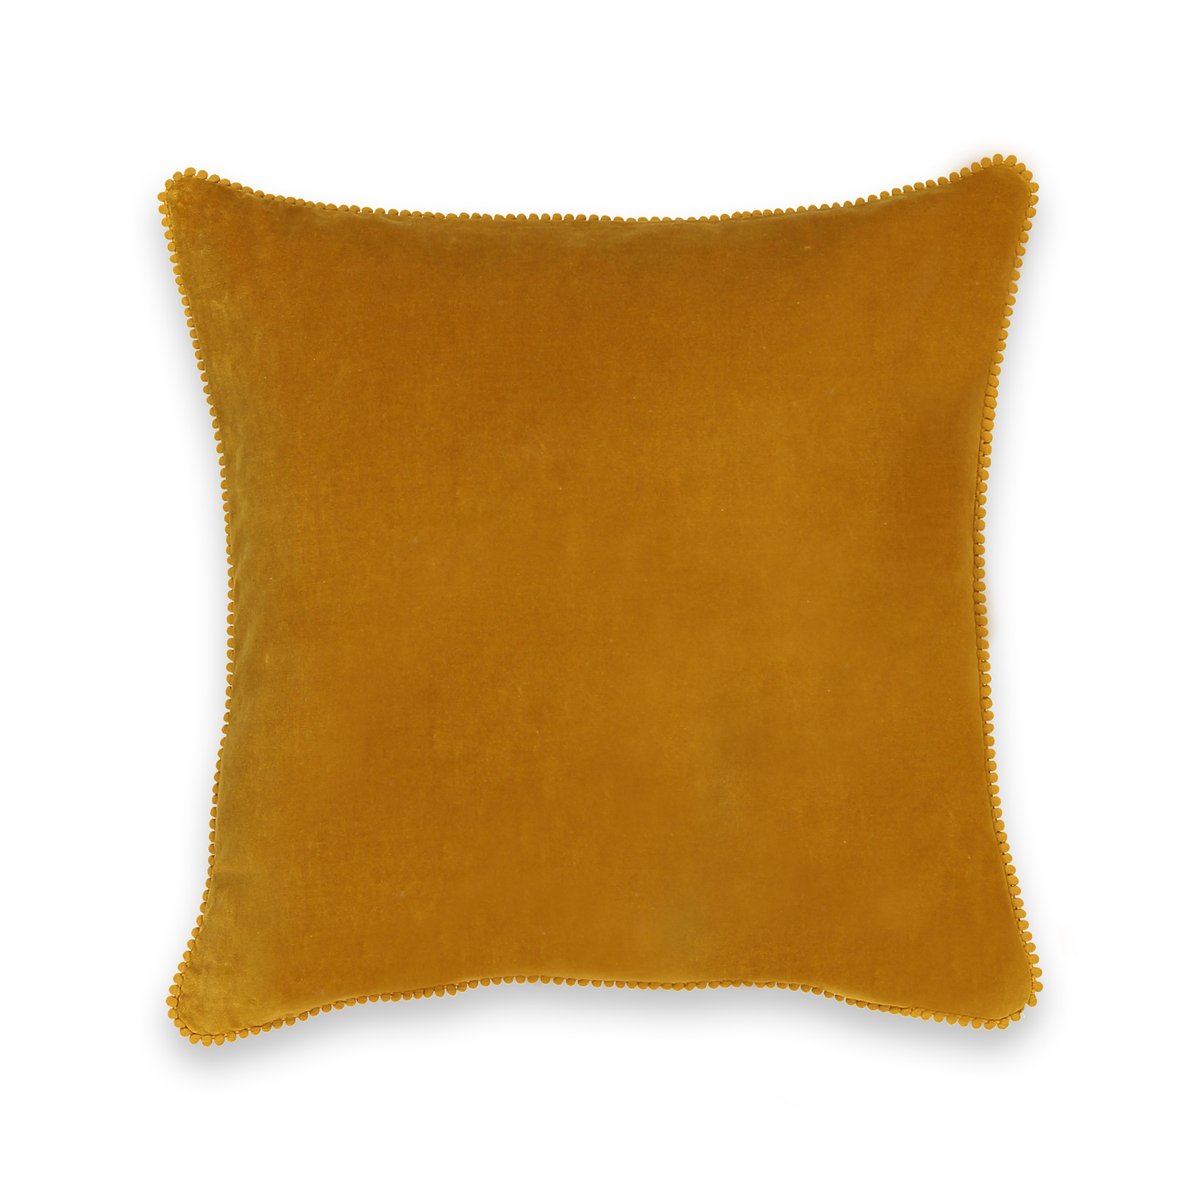 Чехол LaRedoute На подушку из велюра VELVET 50 x 30 см желтый, размер 50 x 30 см - фото 2